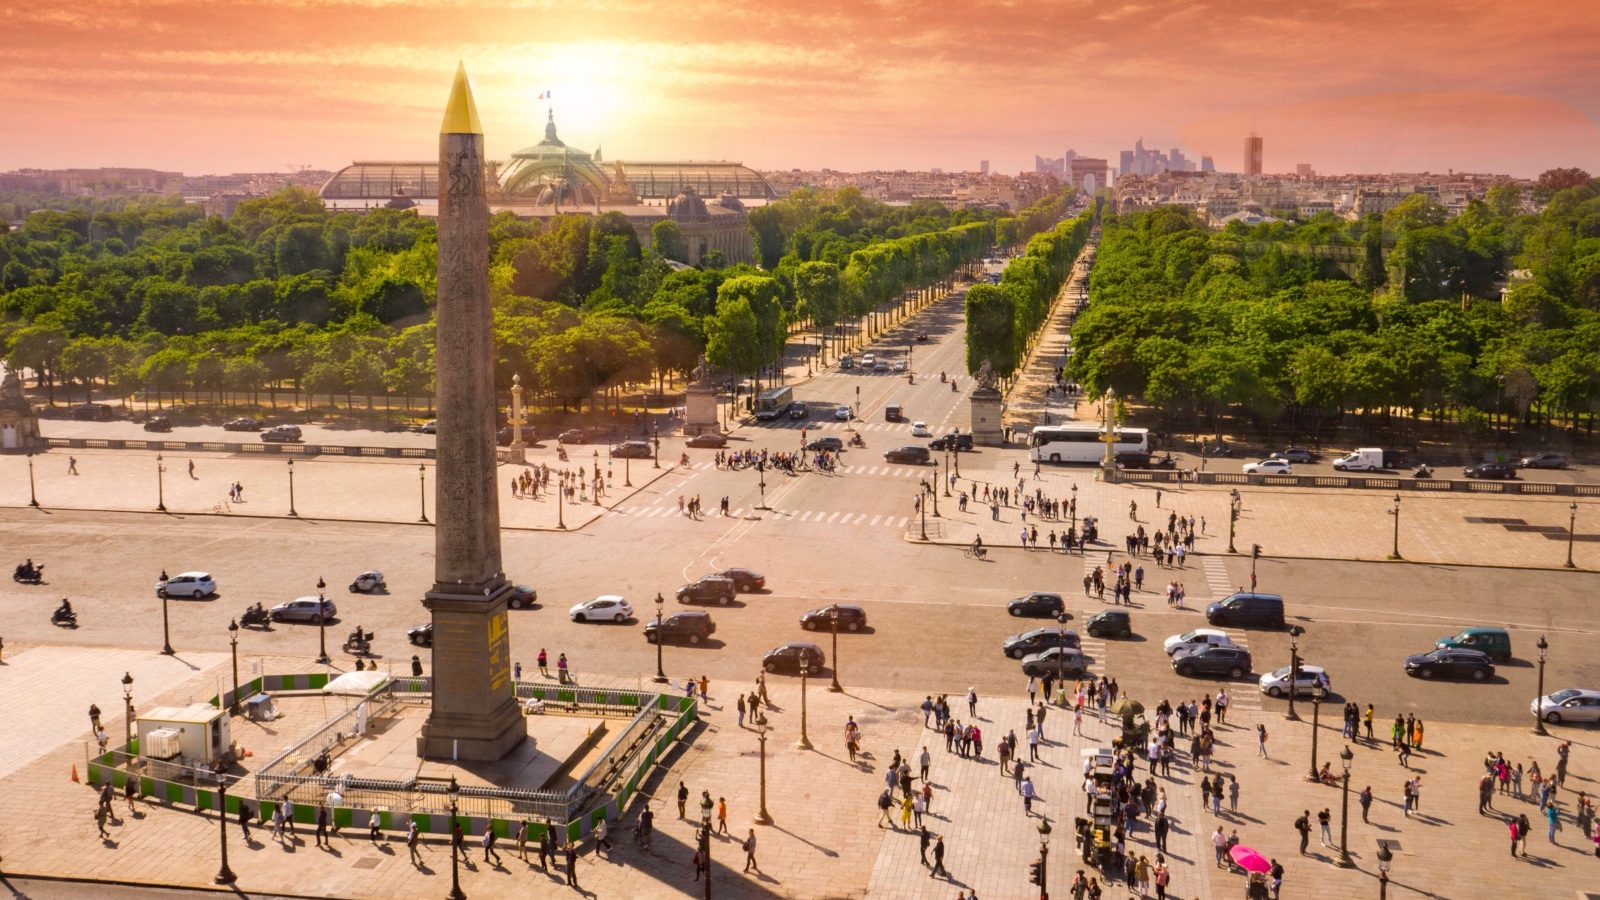 Place de la Concorde with Louxor obelisk and people at sunrise. Paris, France